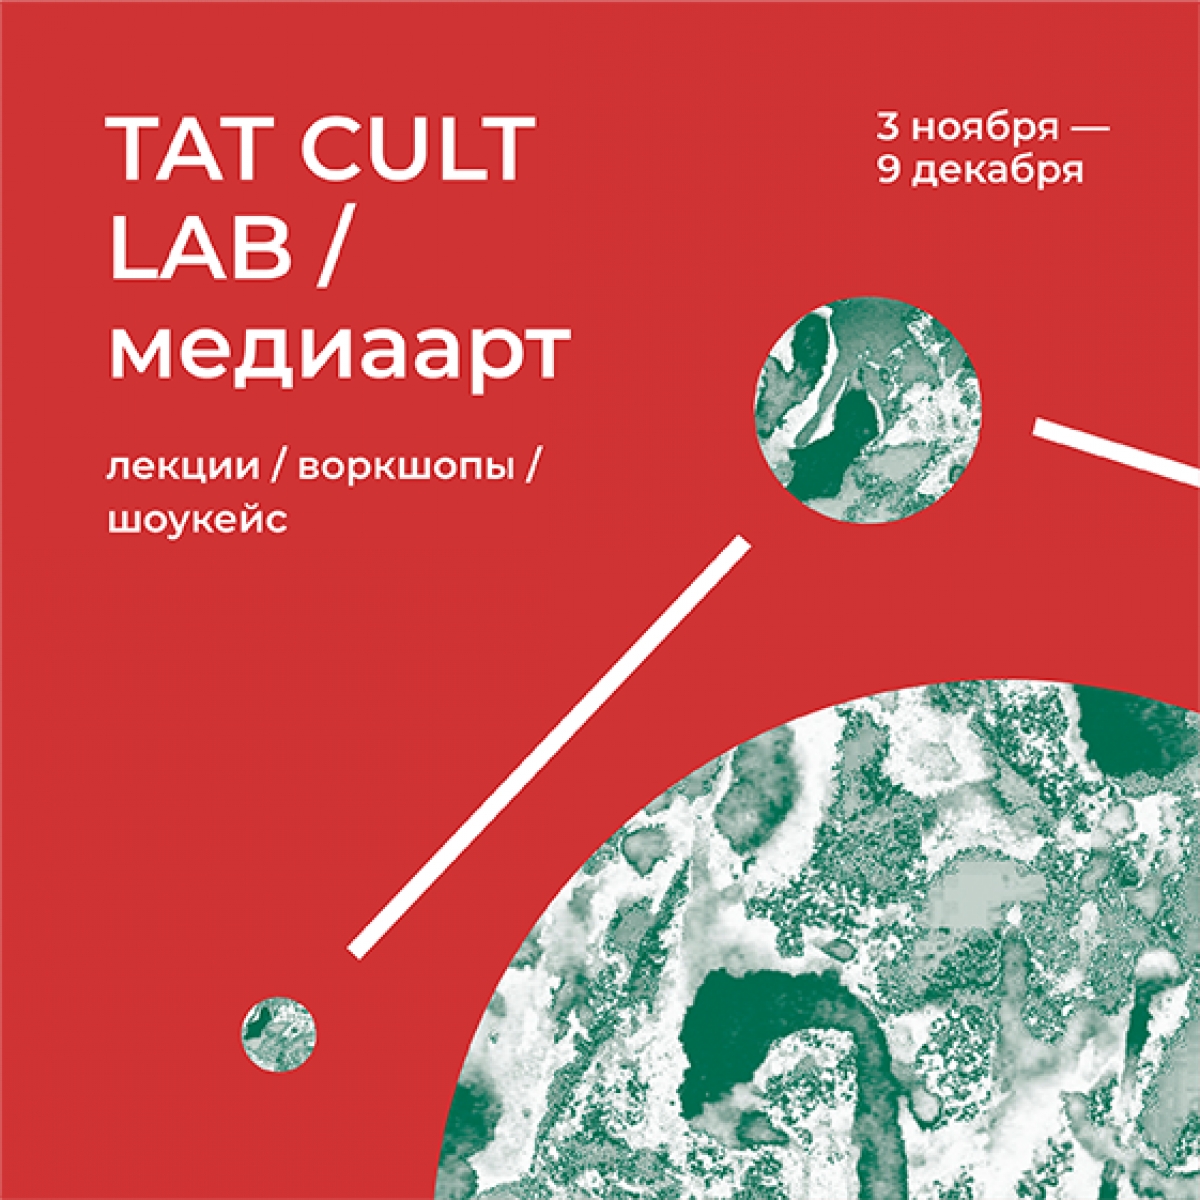 Стала известна подробная программа лекций медиалаборатории TAT CULT LAB / медиаарт